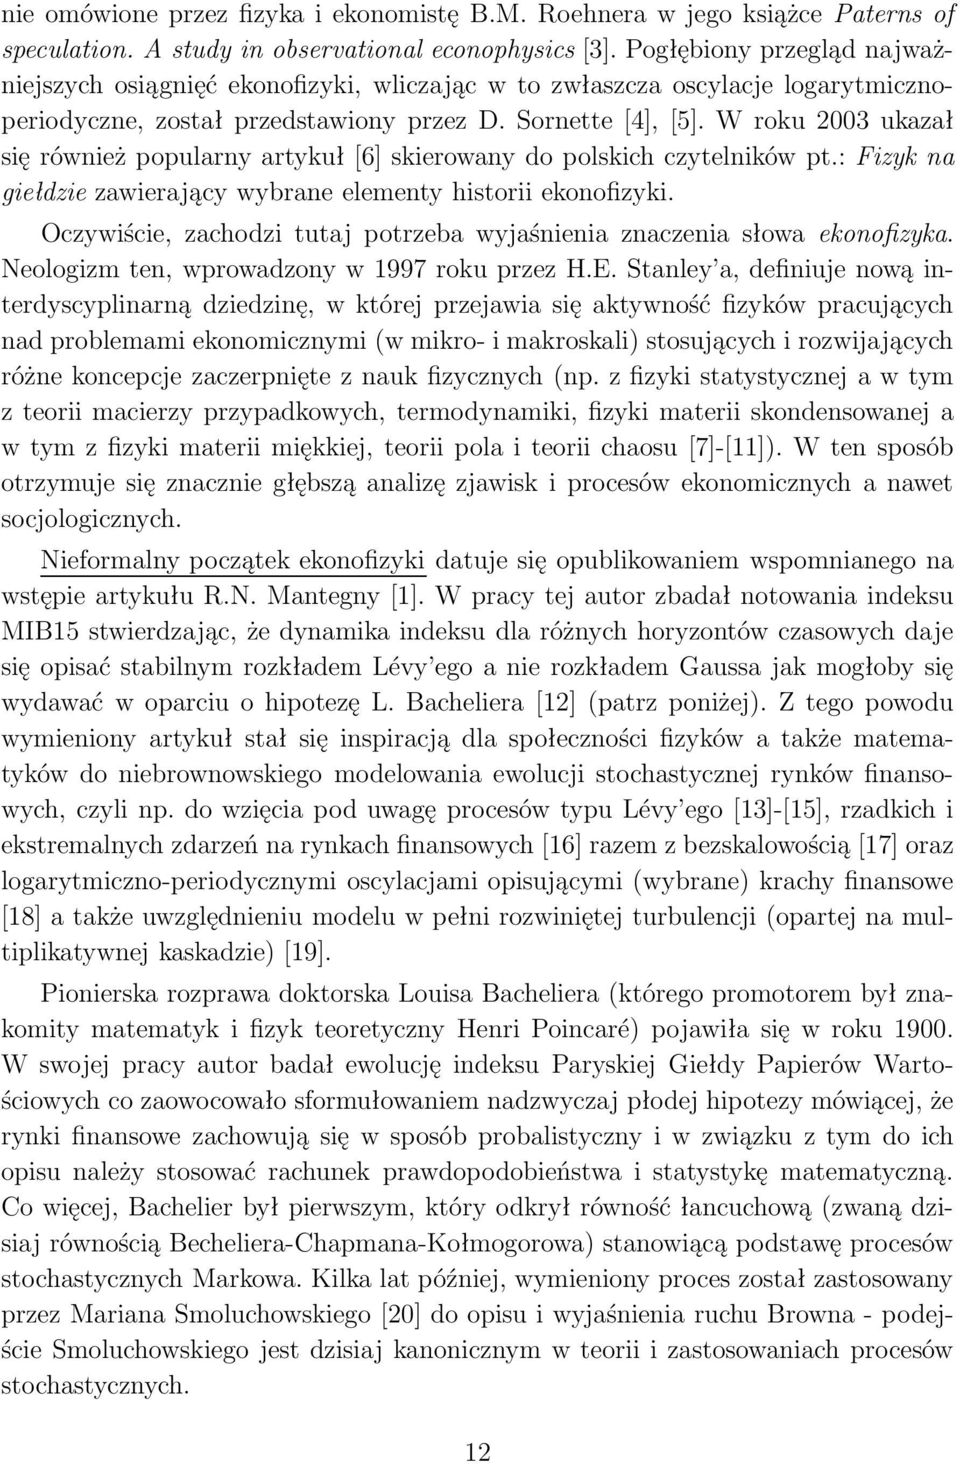 W roku 2003 ukazał się również popularny artykuł [6] skierowany do polskich czytelników pt.: Fizyk na giełdzie zawierający wybrane elementy historii ekonofizyki.